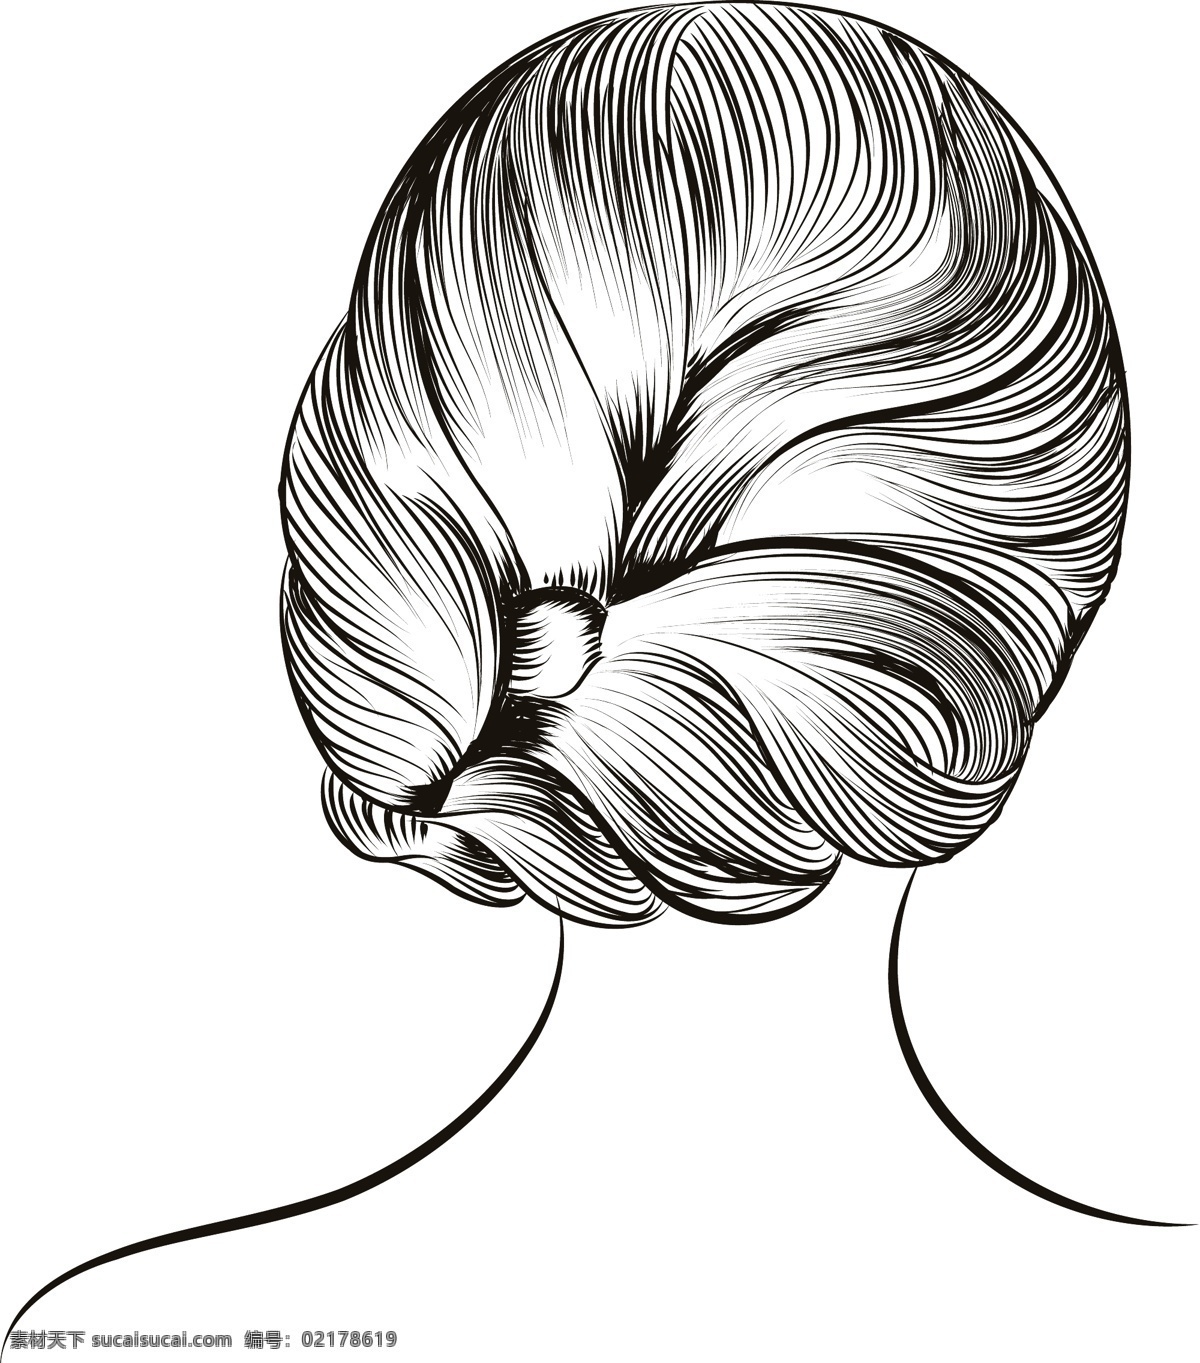 黑白 手绘 女性 发型 插画 人物 盘发